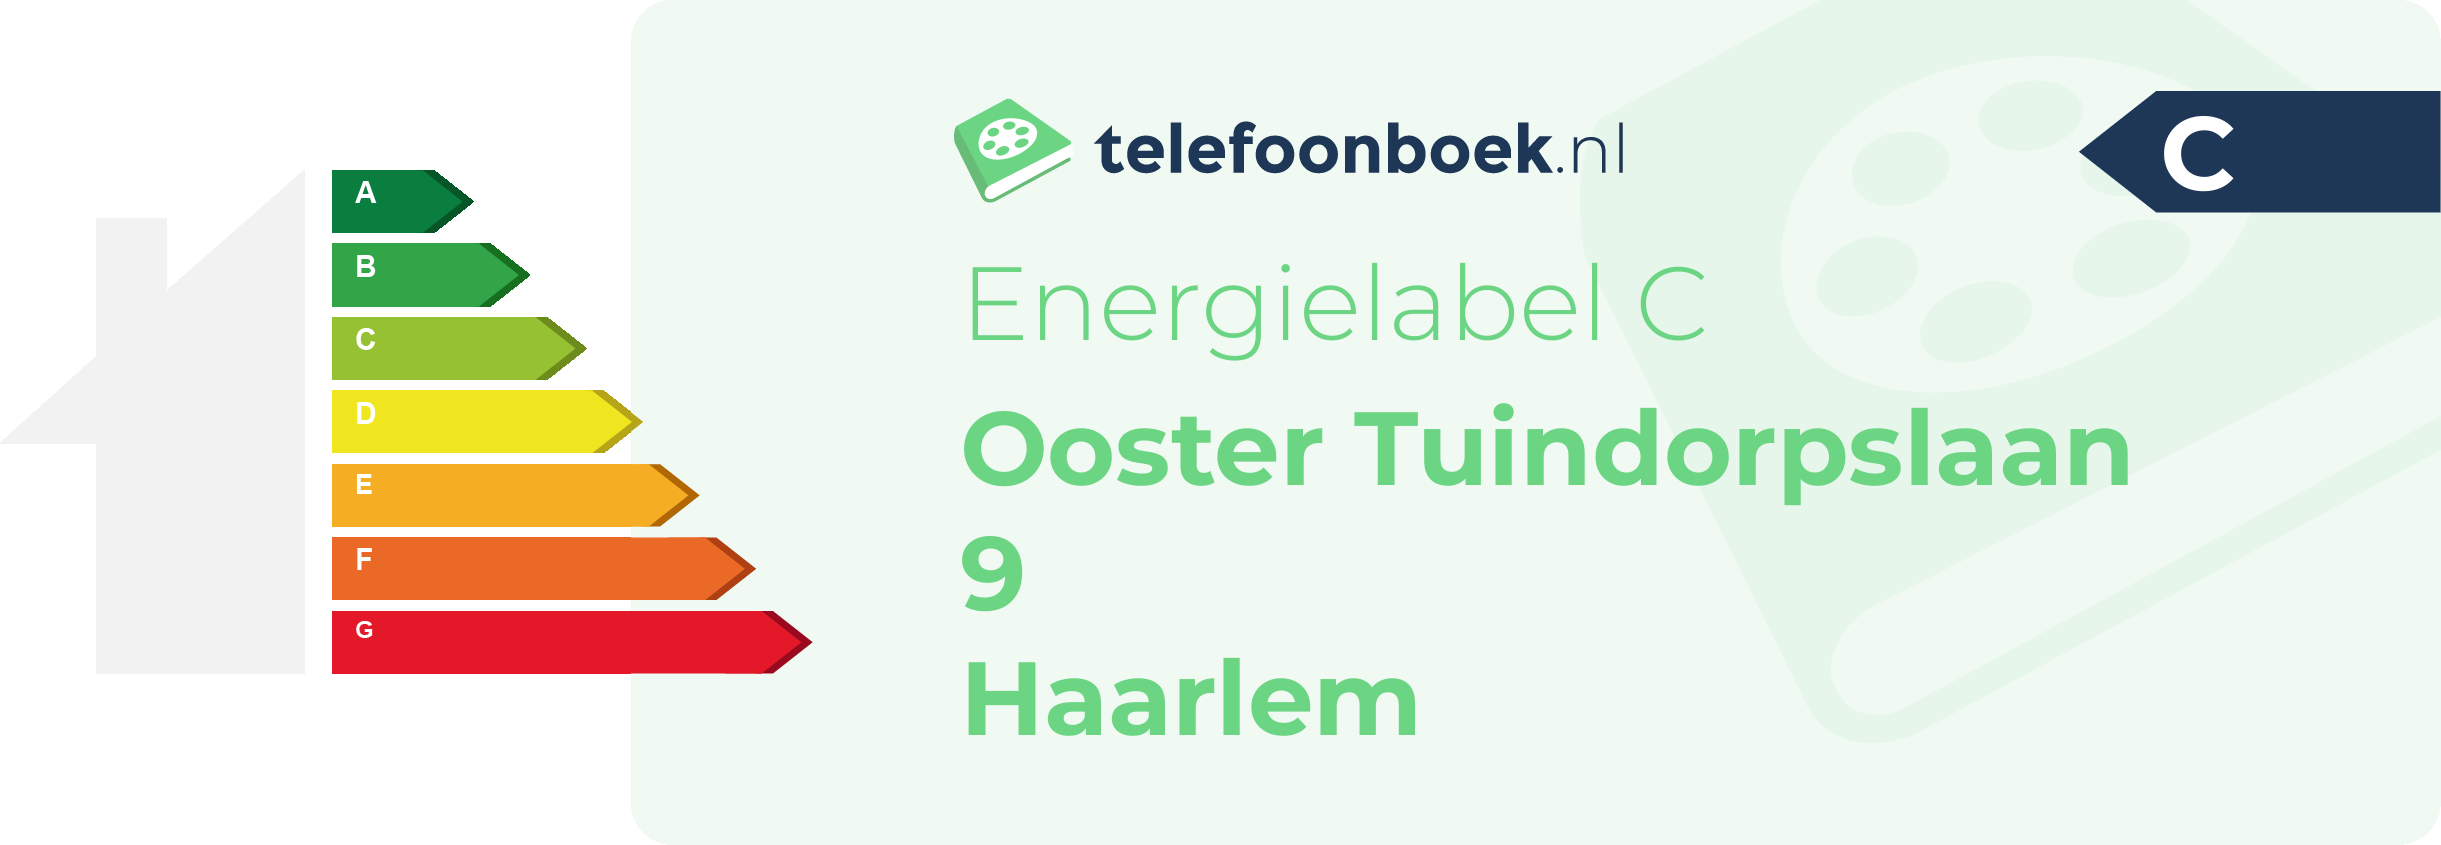 Energielabel Ooster Tuindorpslaan 9 Haarlem